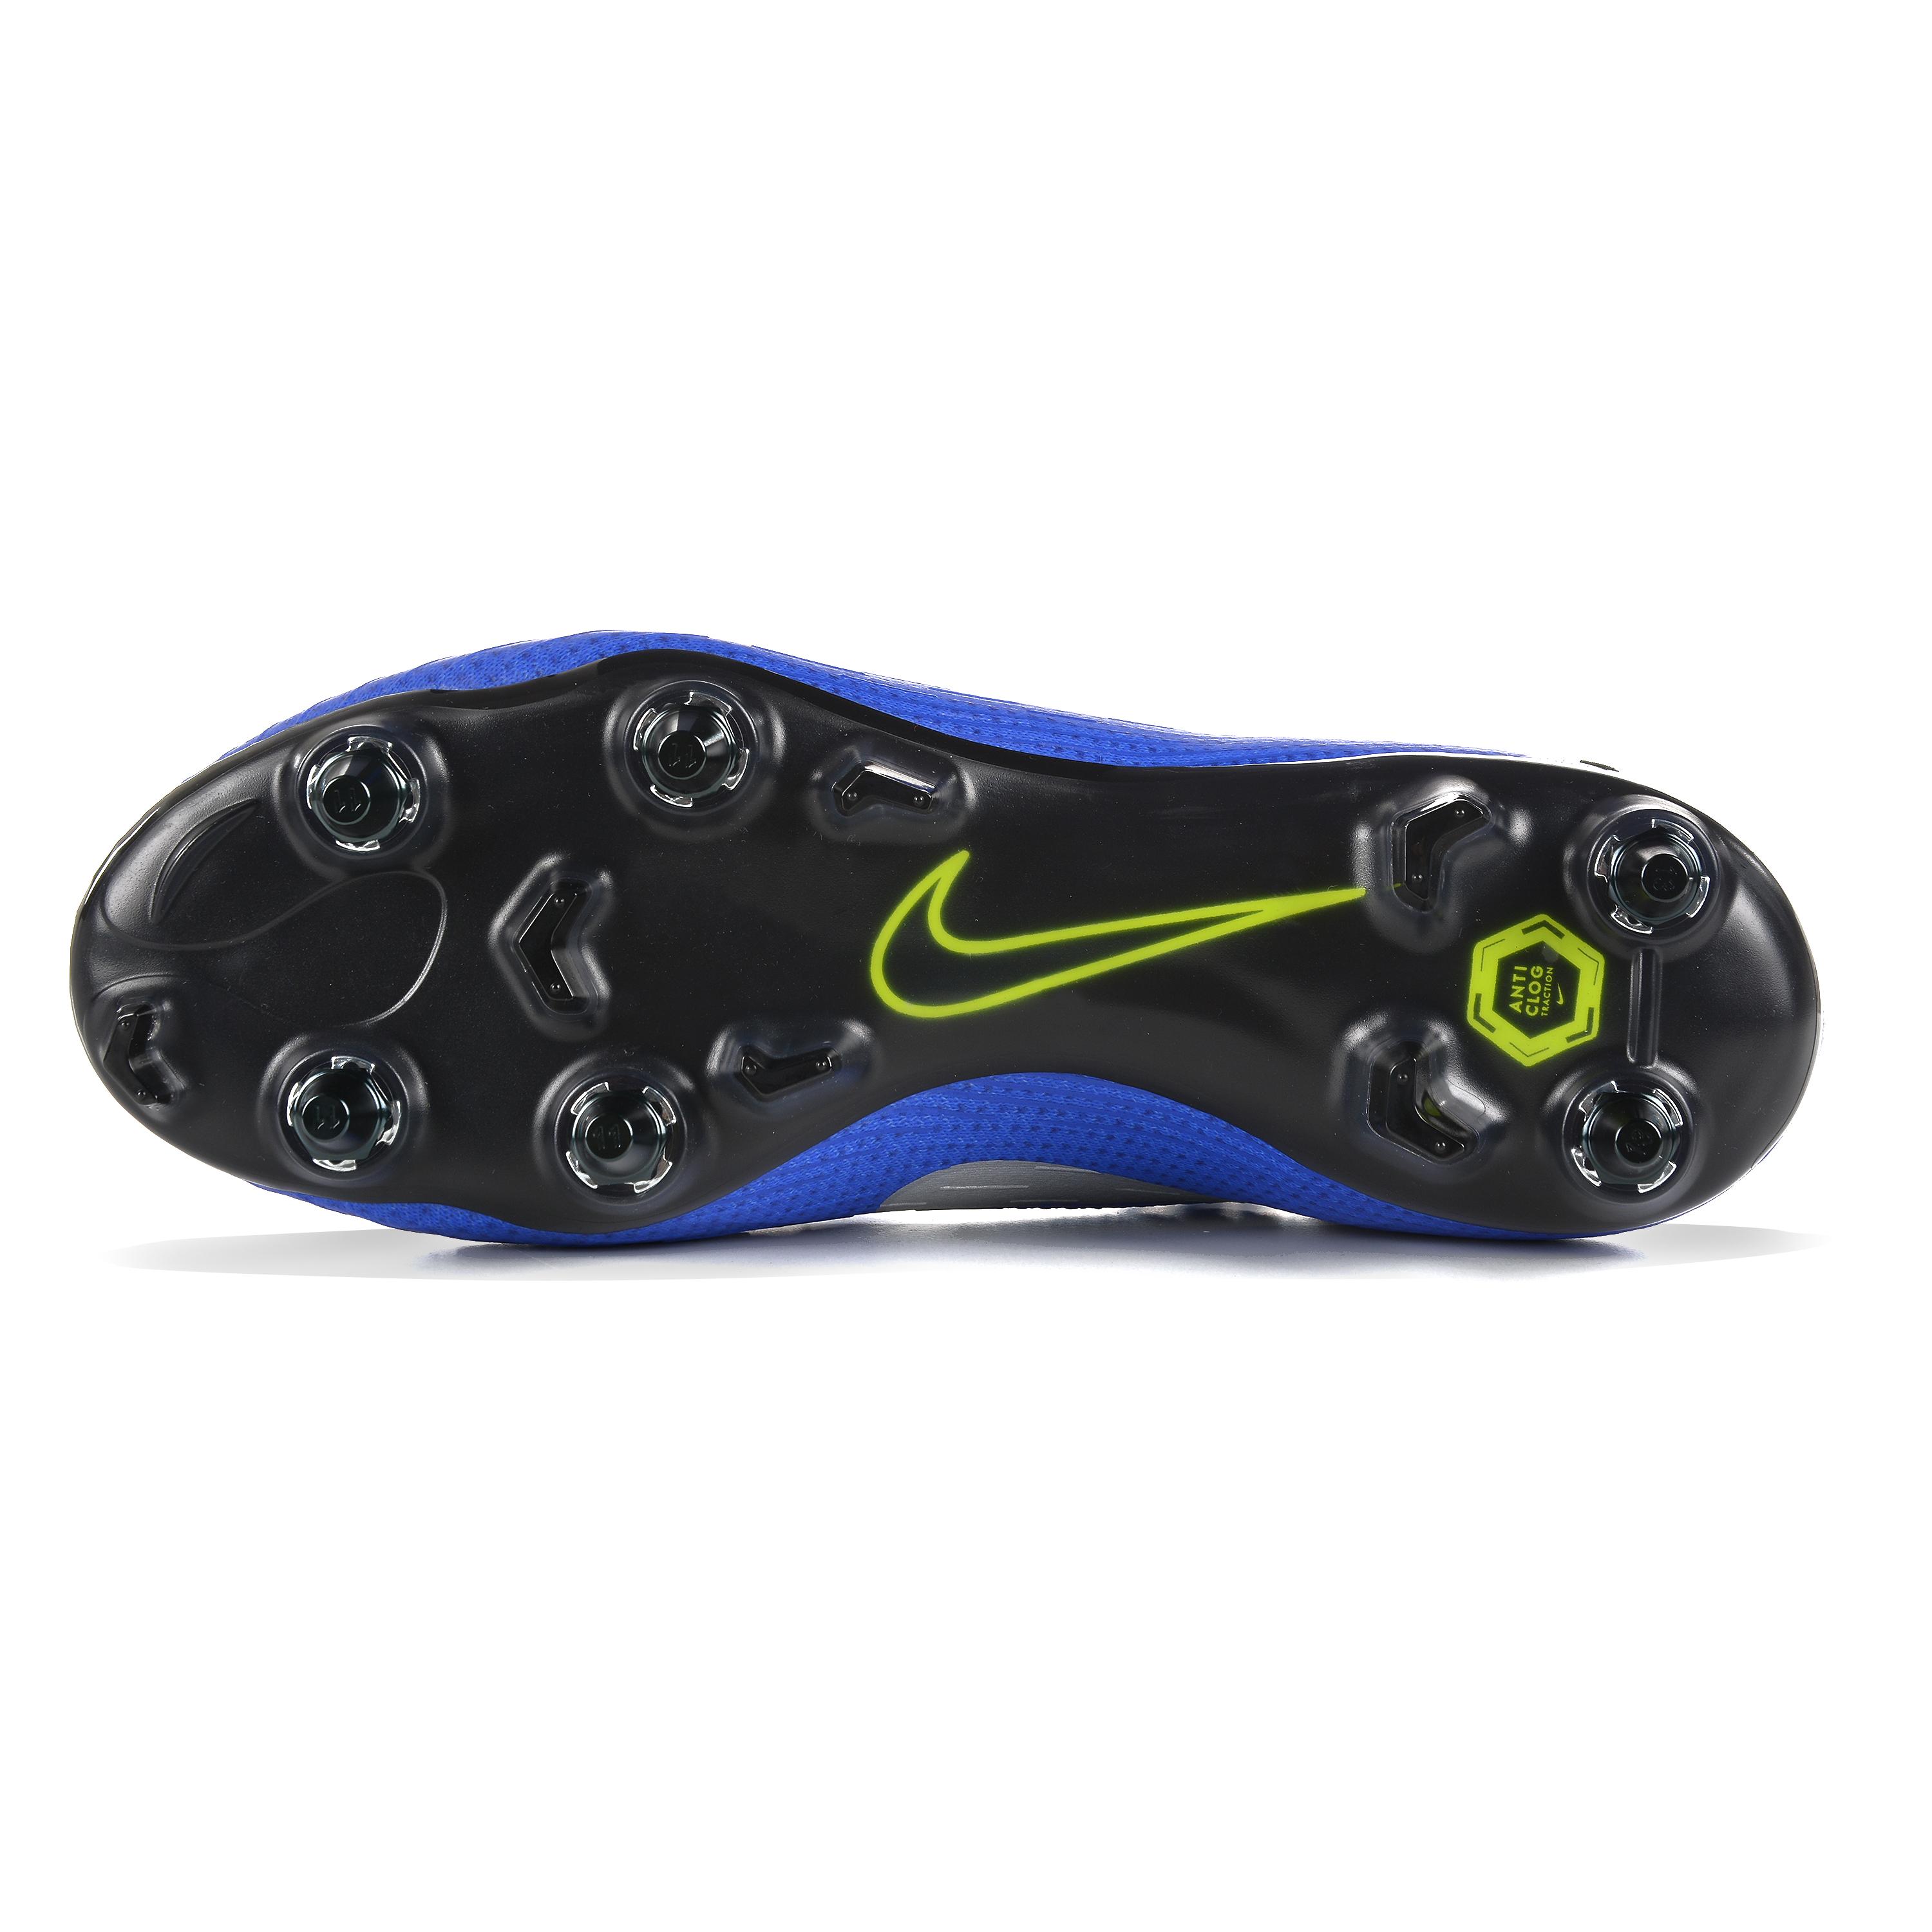 Nike Mercurial Superfly 360 Elite Voetbalschoen (stevige